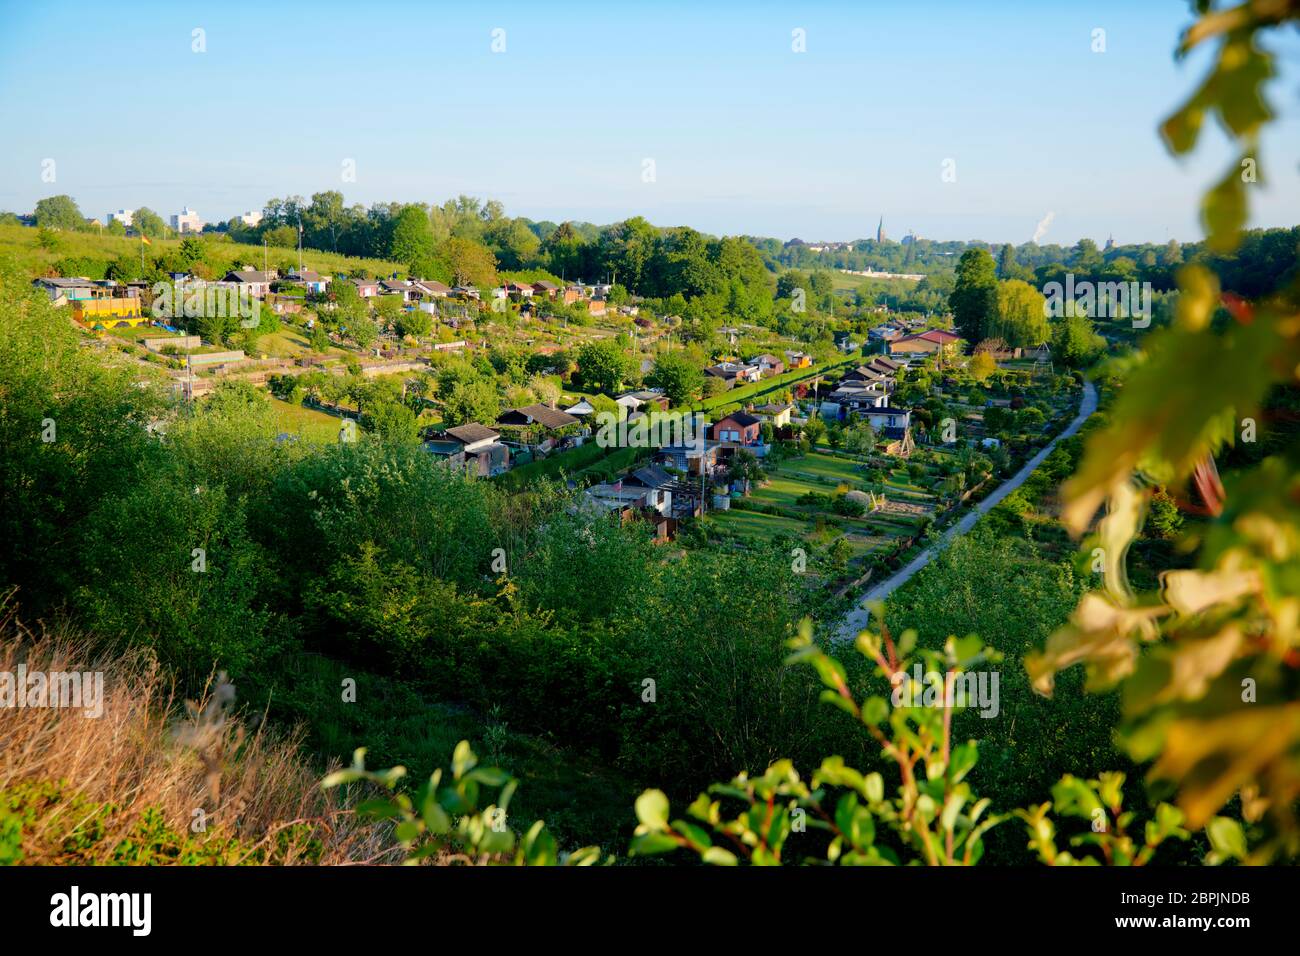 Kleingartenanlage in Dortmund direkt unterhalb der A40 in einem gruenen Tal. Stock Photo